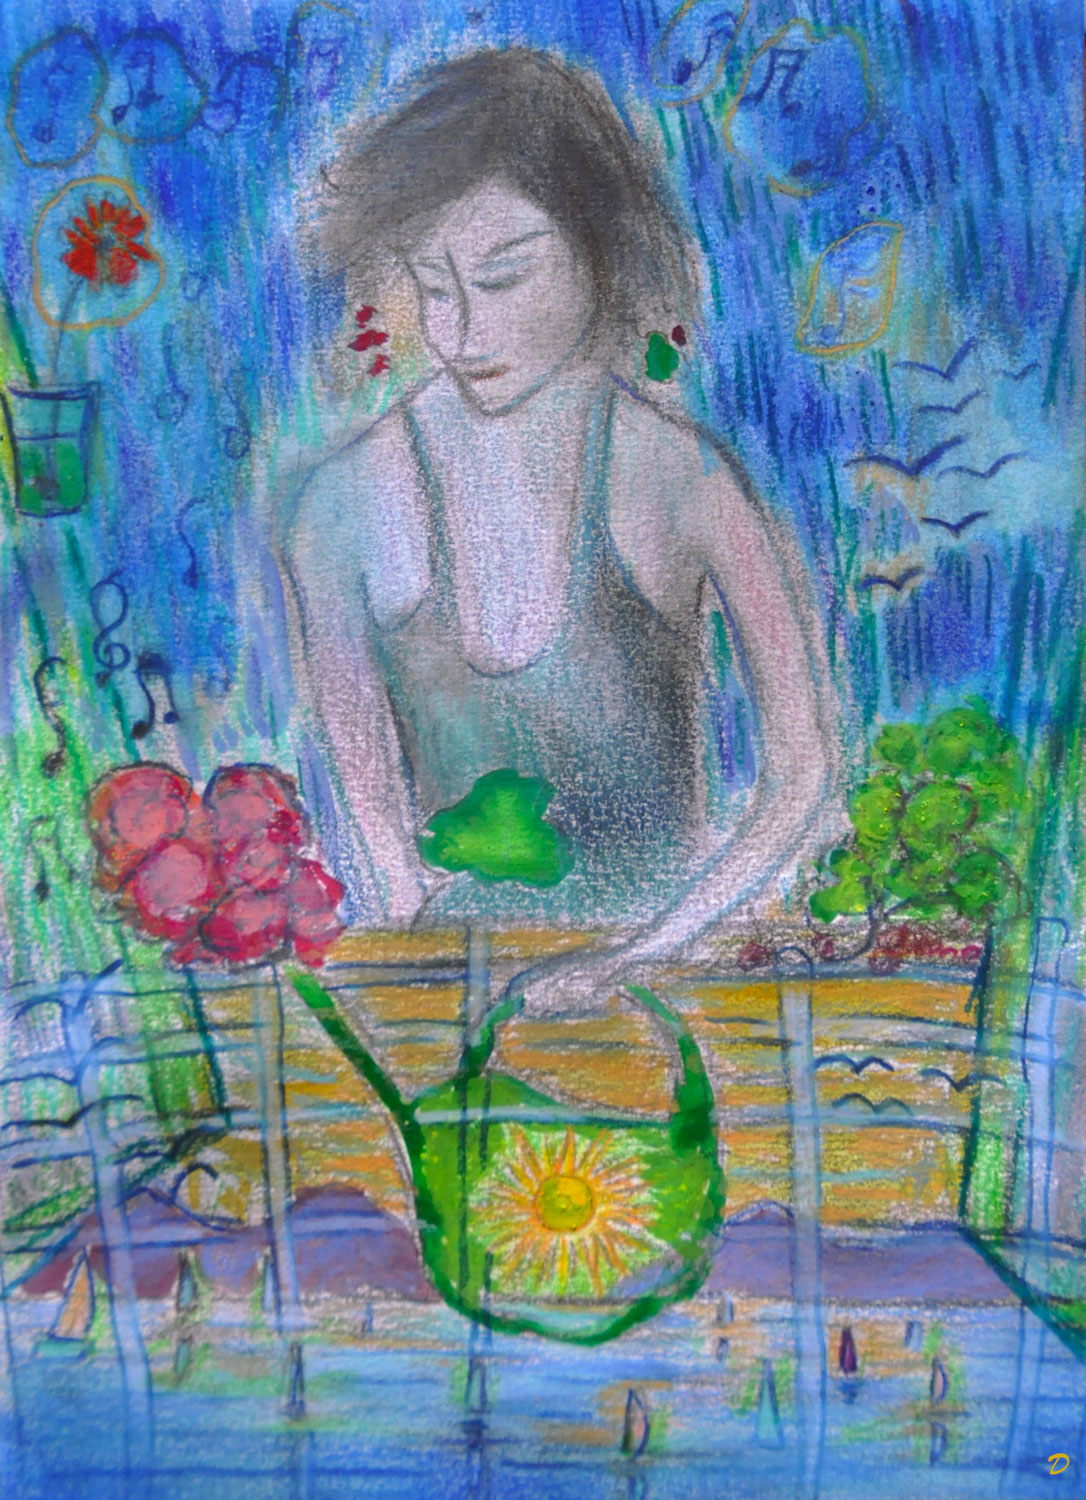 L'humeur bleue, 2. Crayon de couleur, huile et pastel sur papier. 21x15, 2022